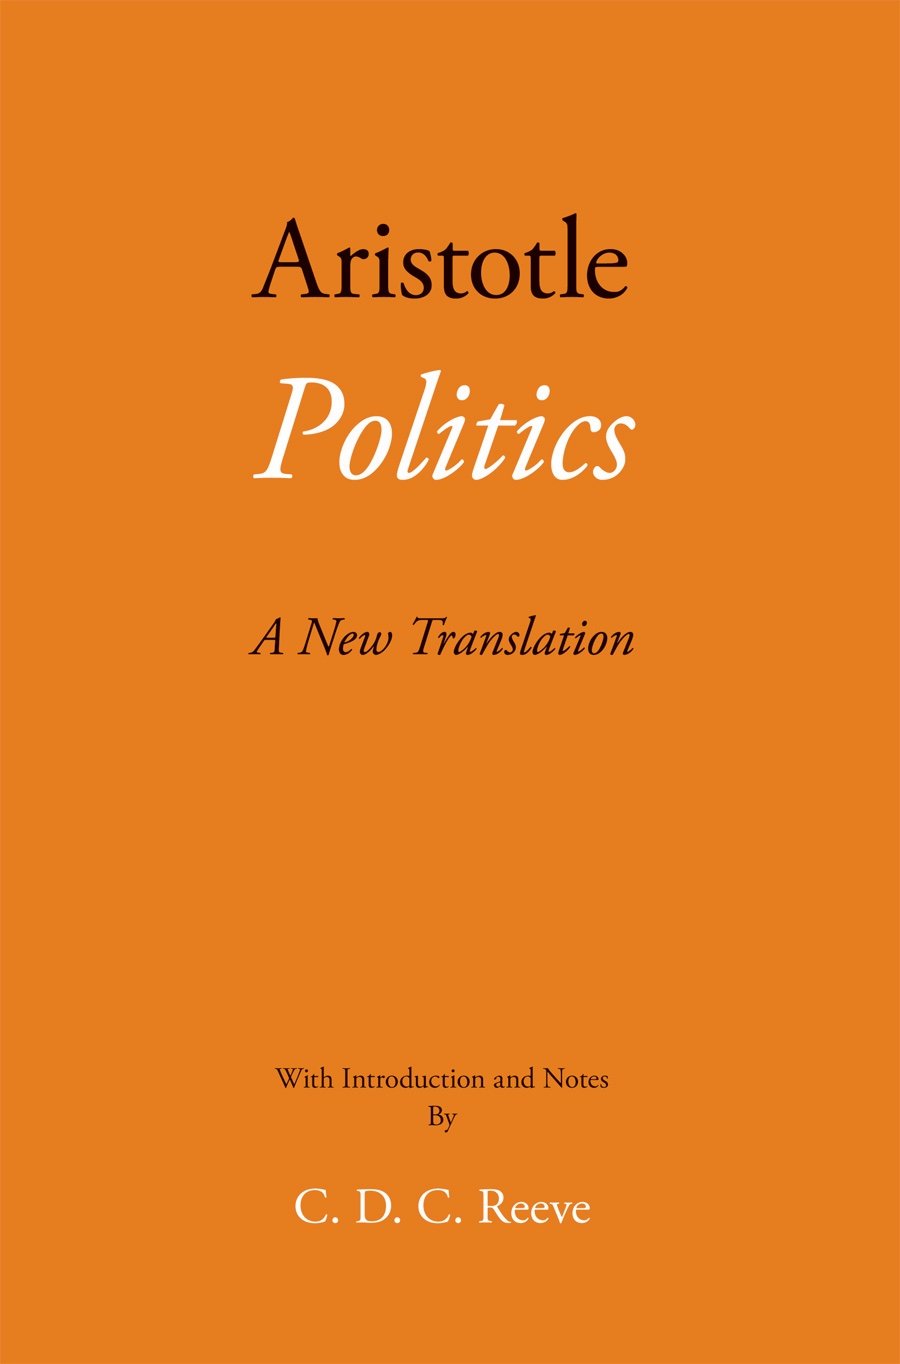 Politics : A New Translation ร้านหนังสือและสิ่งของ เป็นร้านหนังสือภาษาอังกฤษหายาก และร้านกาแฟ หรือ บุ๊คคาเฟ่ ตั้งอยู่สุขุมวิท กรุงเทพ